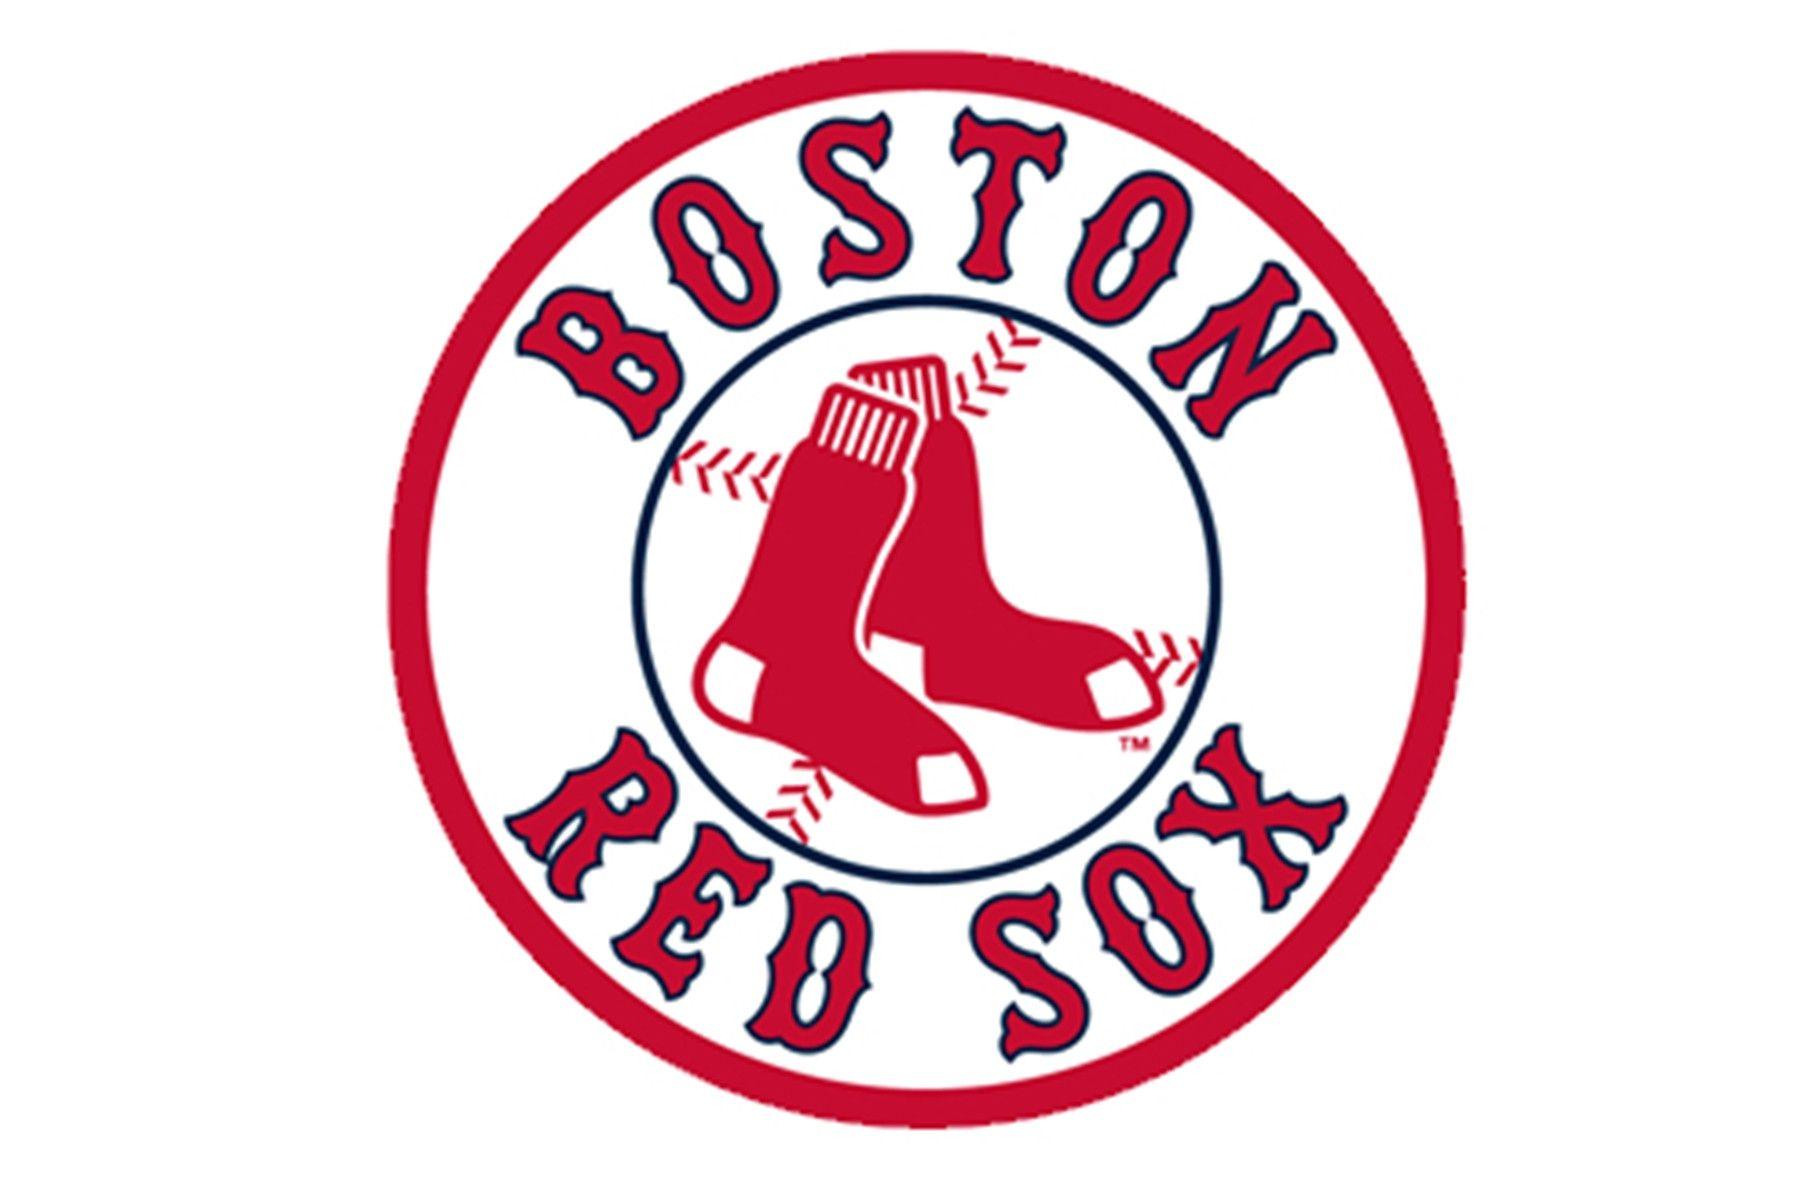 Boston Red Sox Socks Logo - Boston red socks Logos